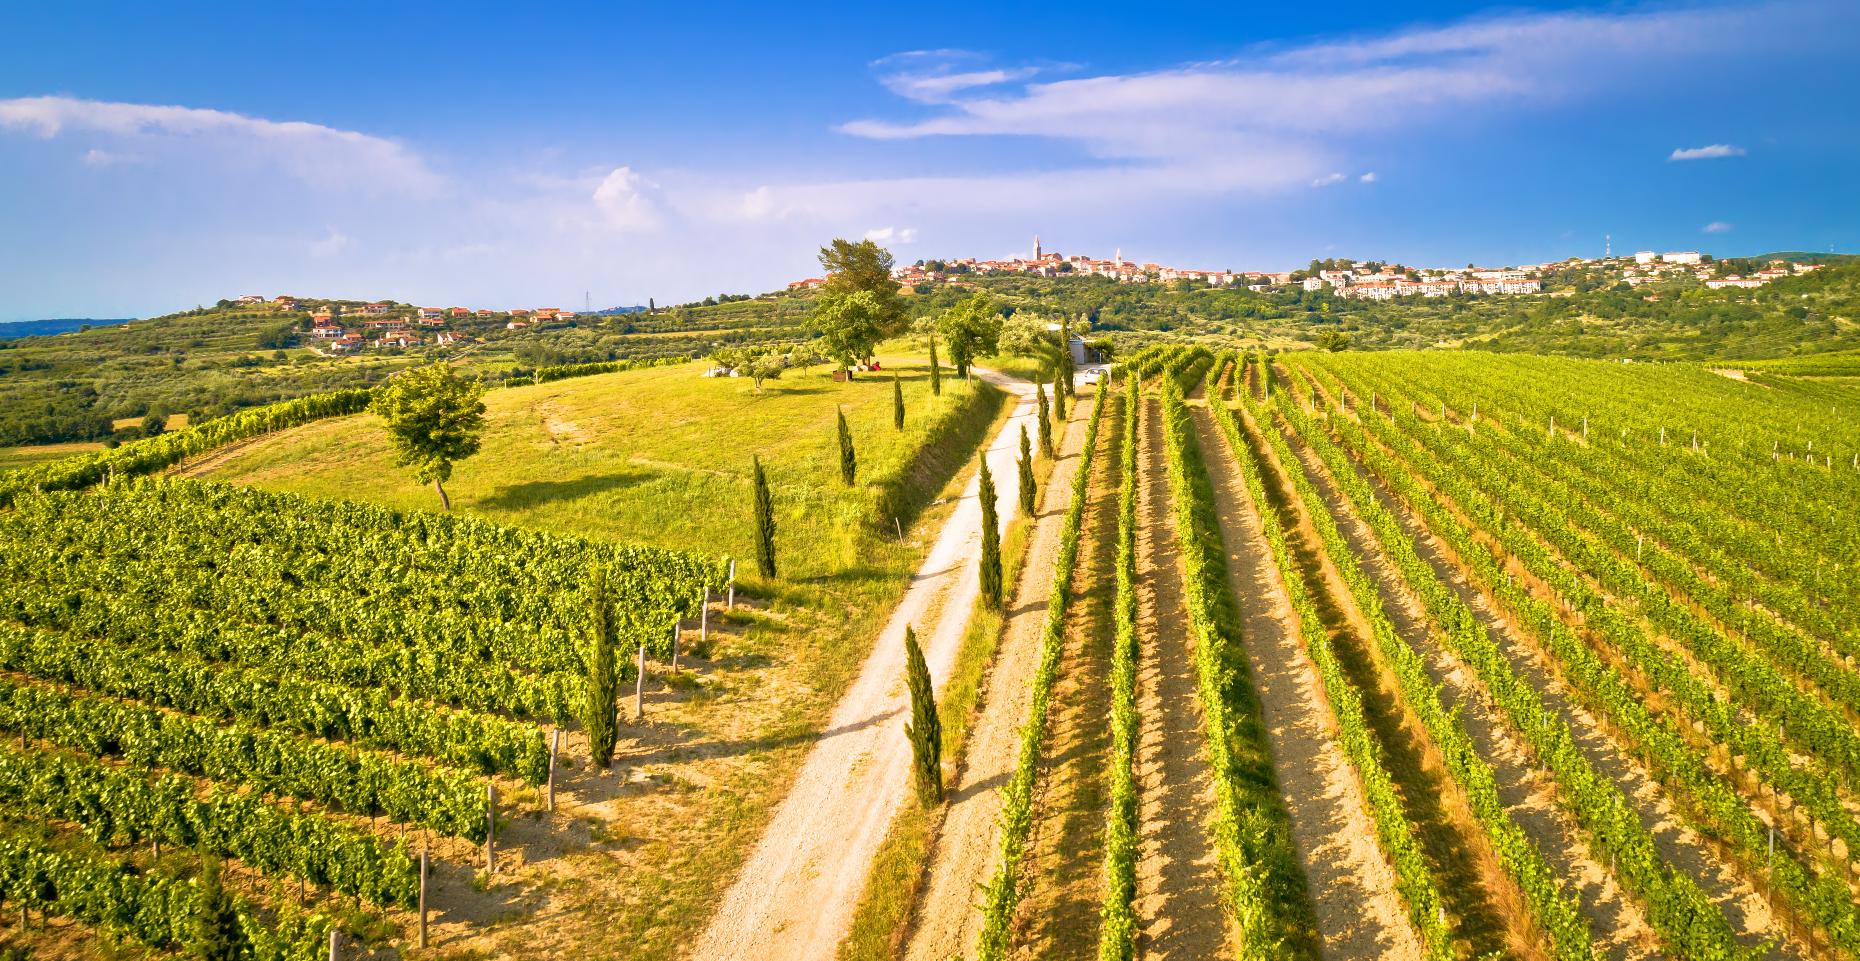 Istria vineyard (Image: xbrchx/Shutterstock)